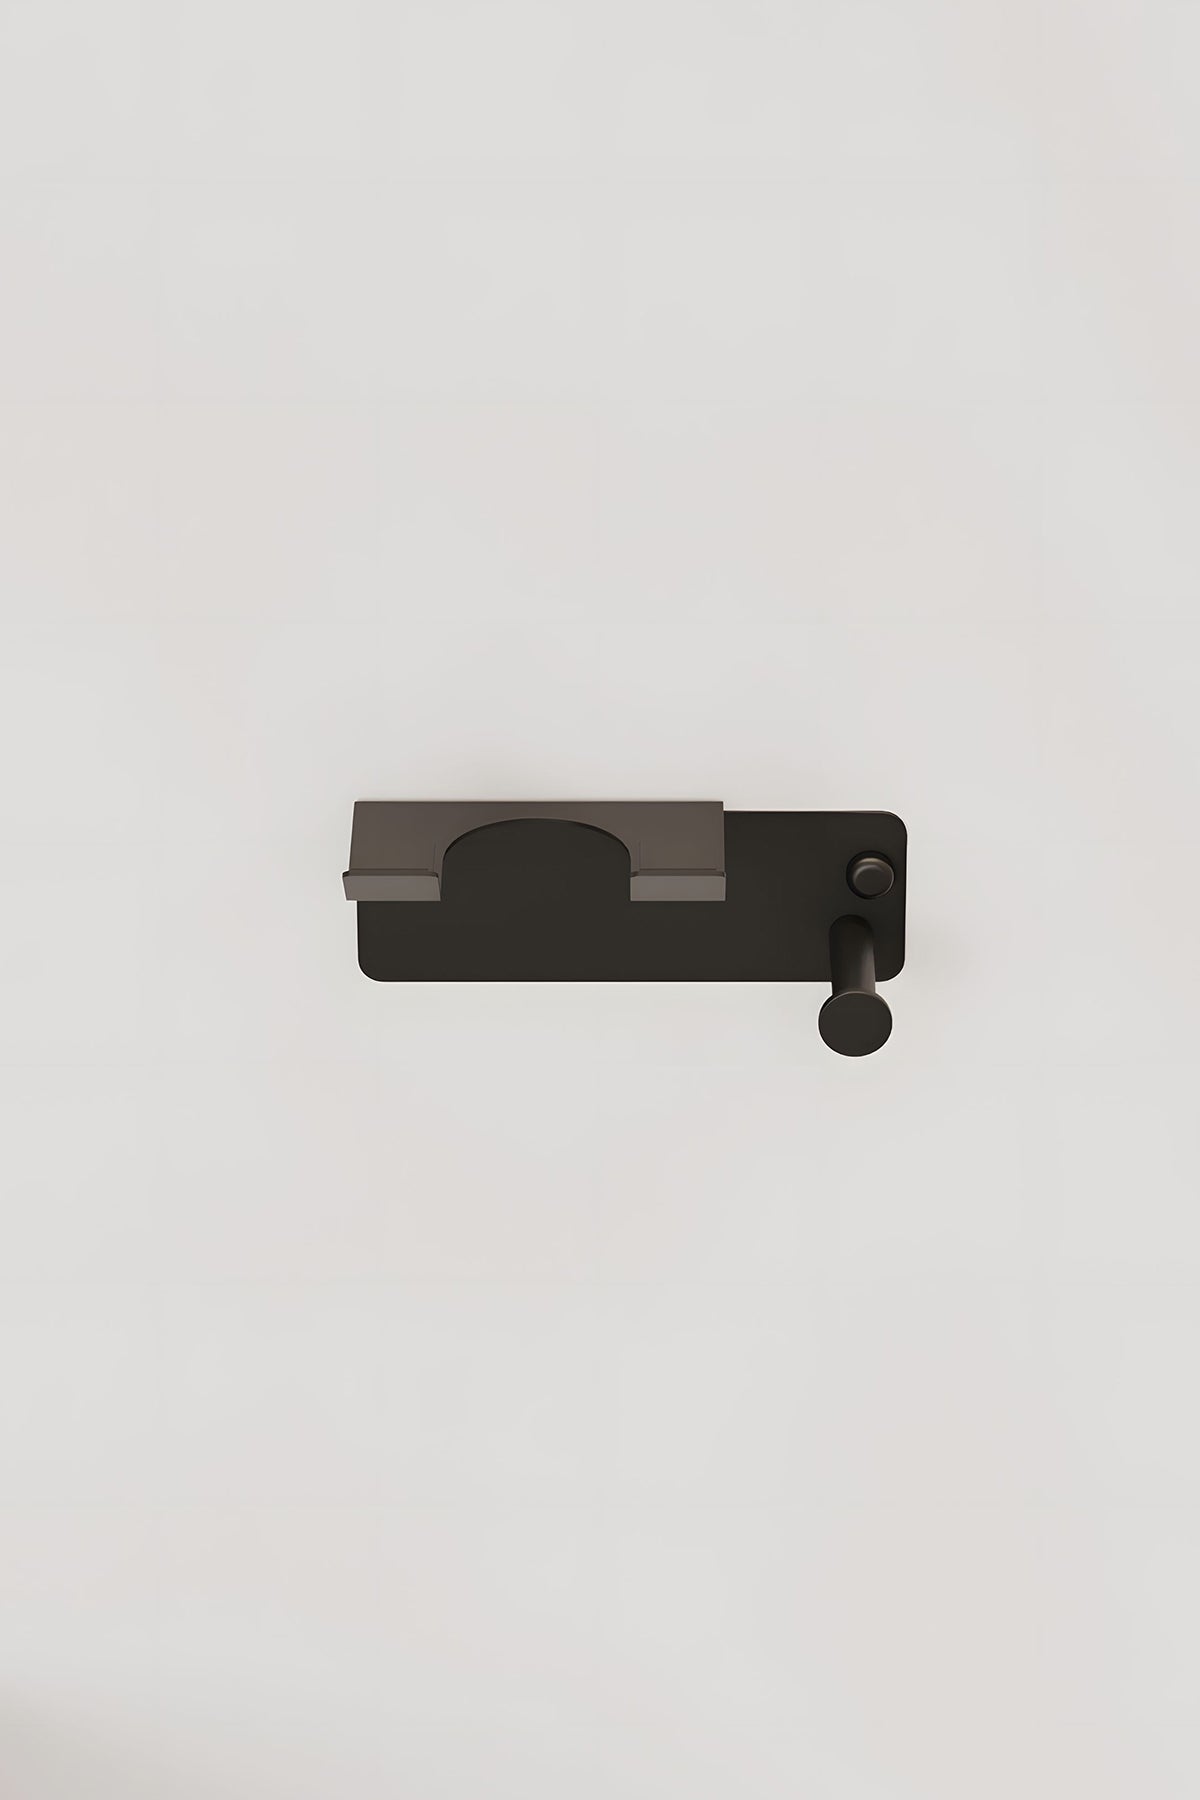 Paslanmaz Çelik Mat Siyah Fön Makinsi Tutacağı- Askılıklı Saç Kurutma Makinesi Tutacağı - Yapıştırma & Vidalama Çift Seçenek